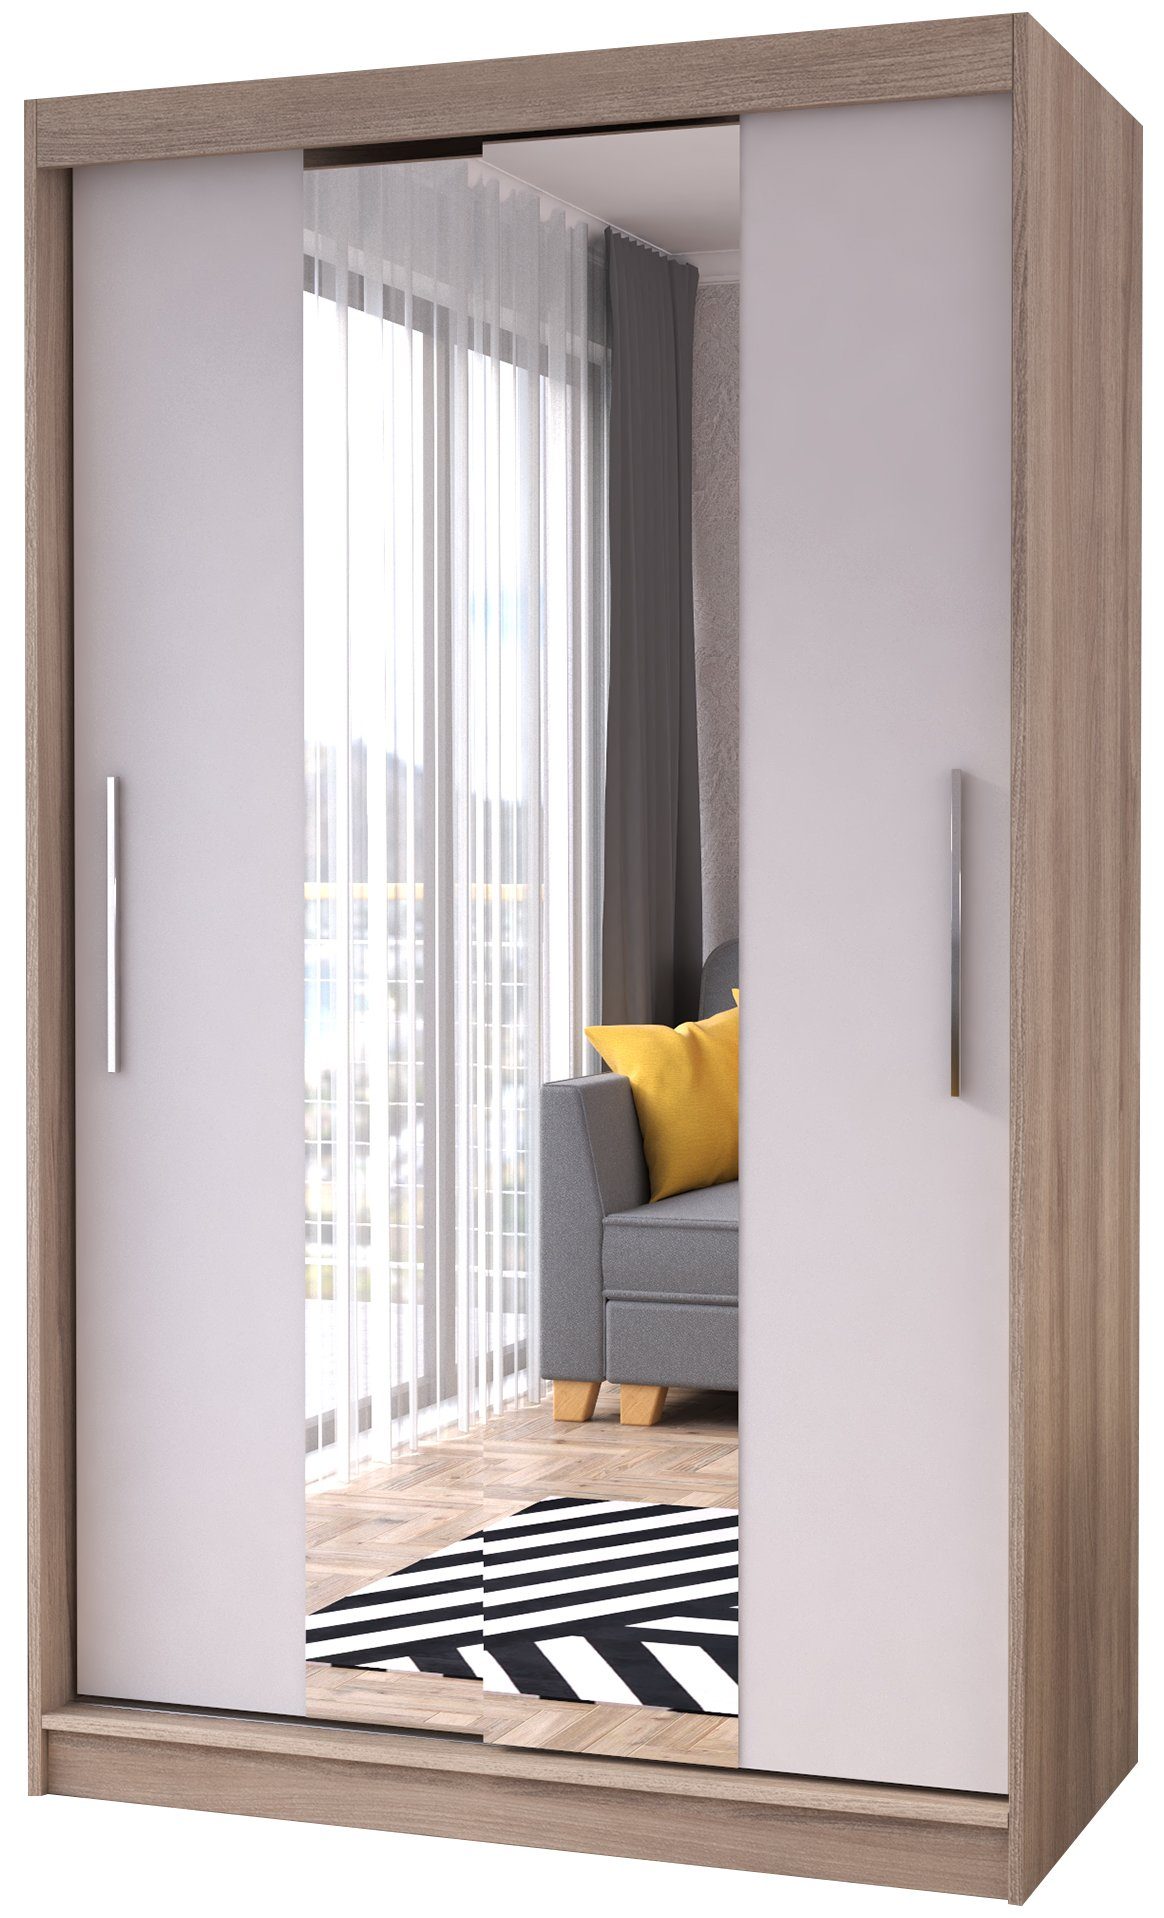 Polini Home Schwebetürenschrank Schwebetürenschrank Prime Comfort 120x200 Spiegel mittig Eichenholzo mit Spiegel eiche-weiß (mittelspiegel) | Eiche-weiß (Mittelspiegel)